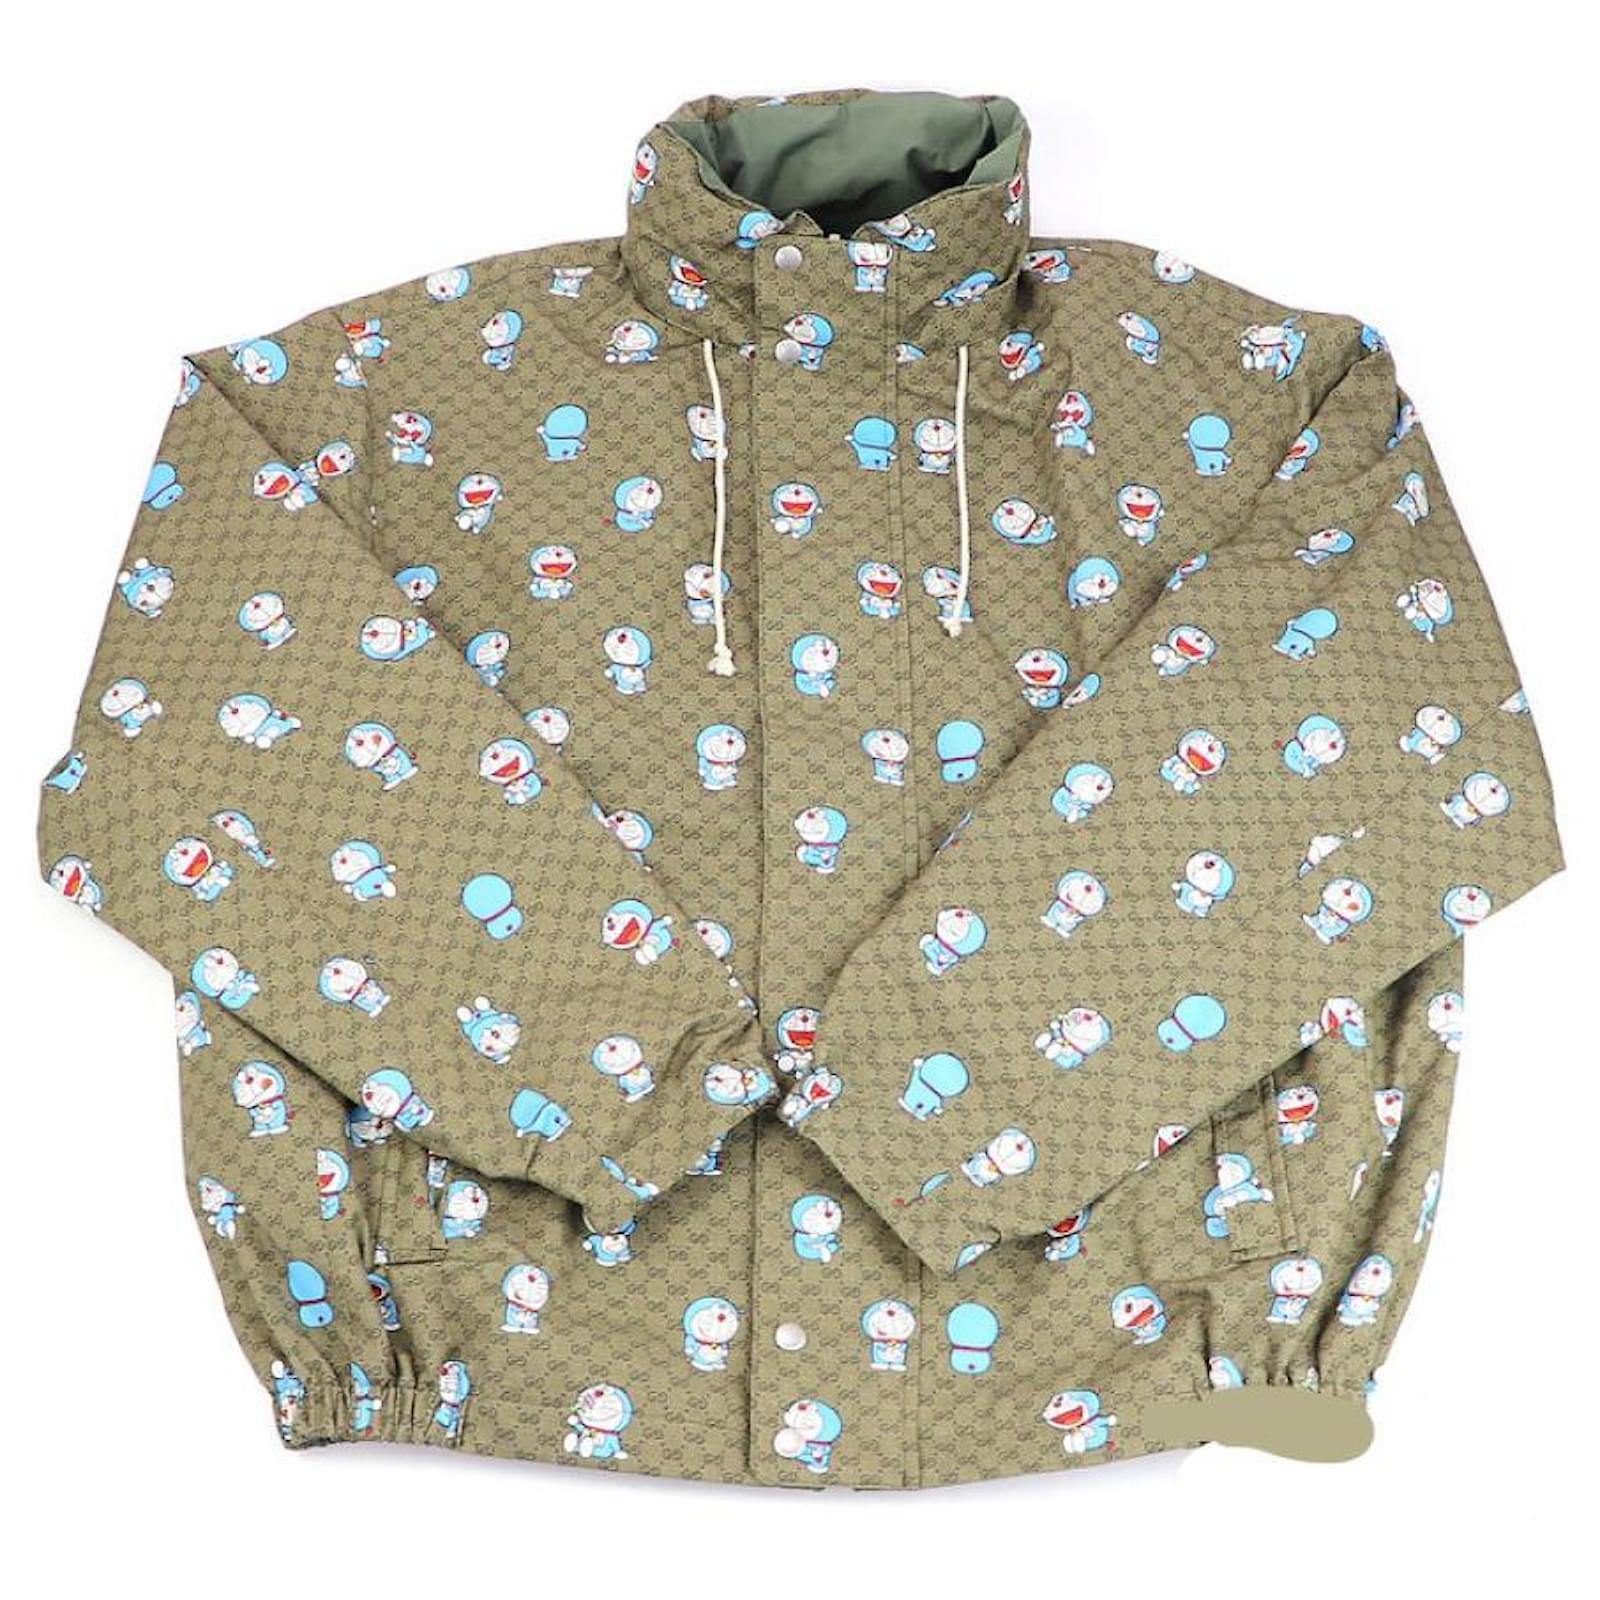 GG ripstop fabric zip jacket